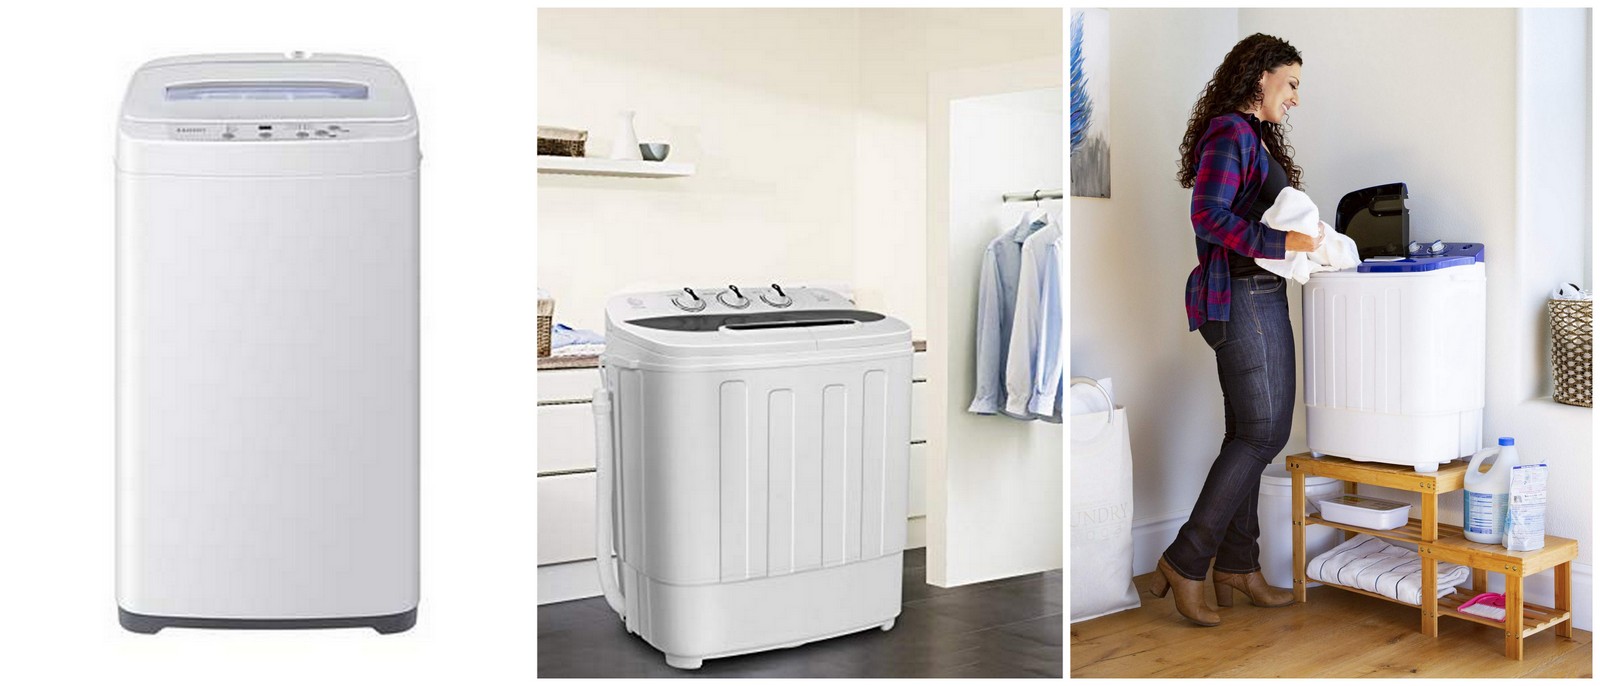 Comfee Eco стиральная машина